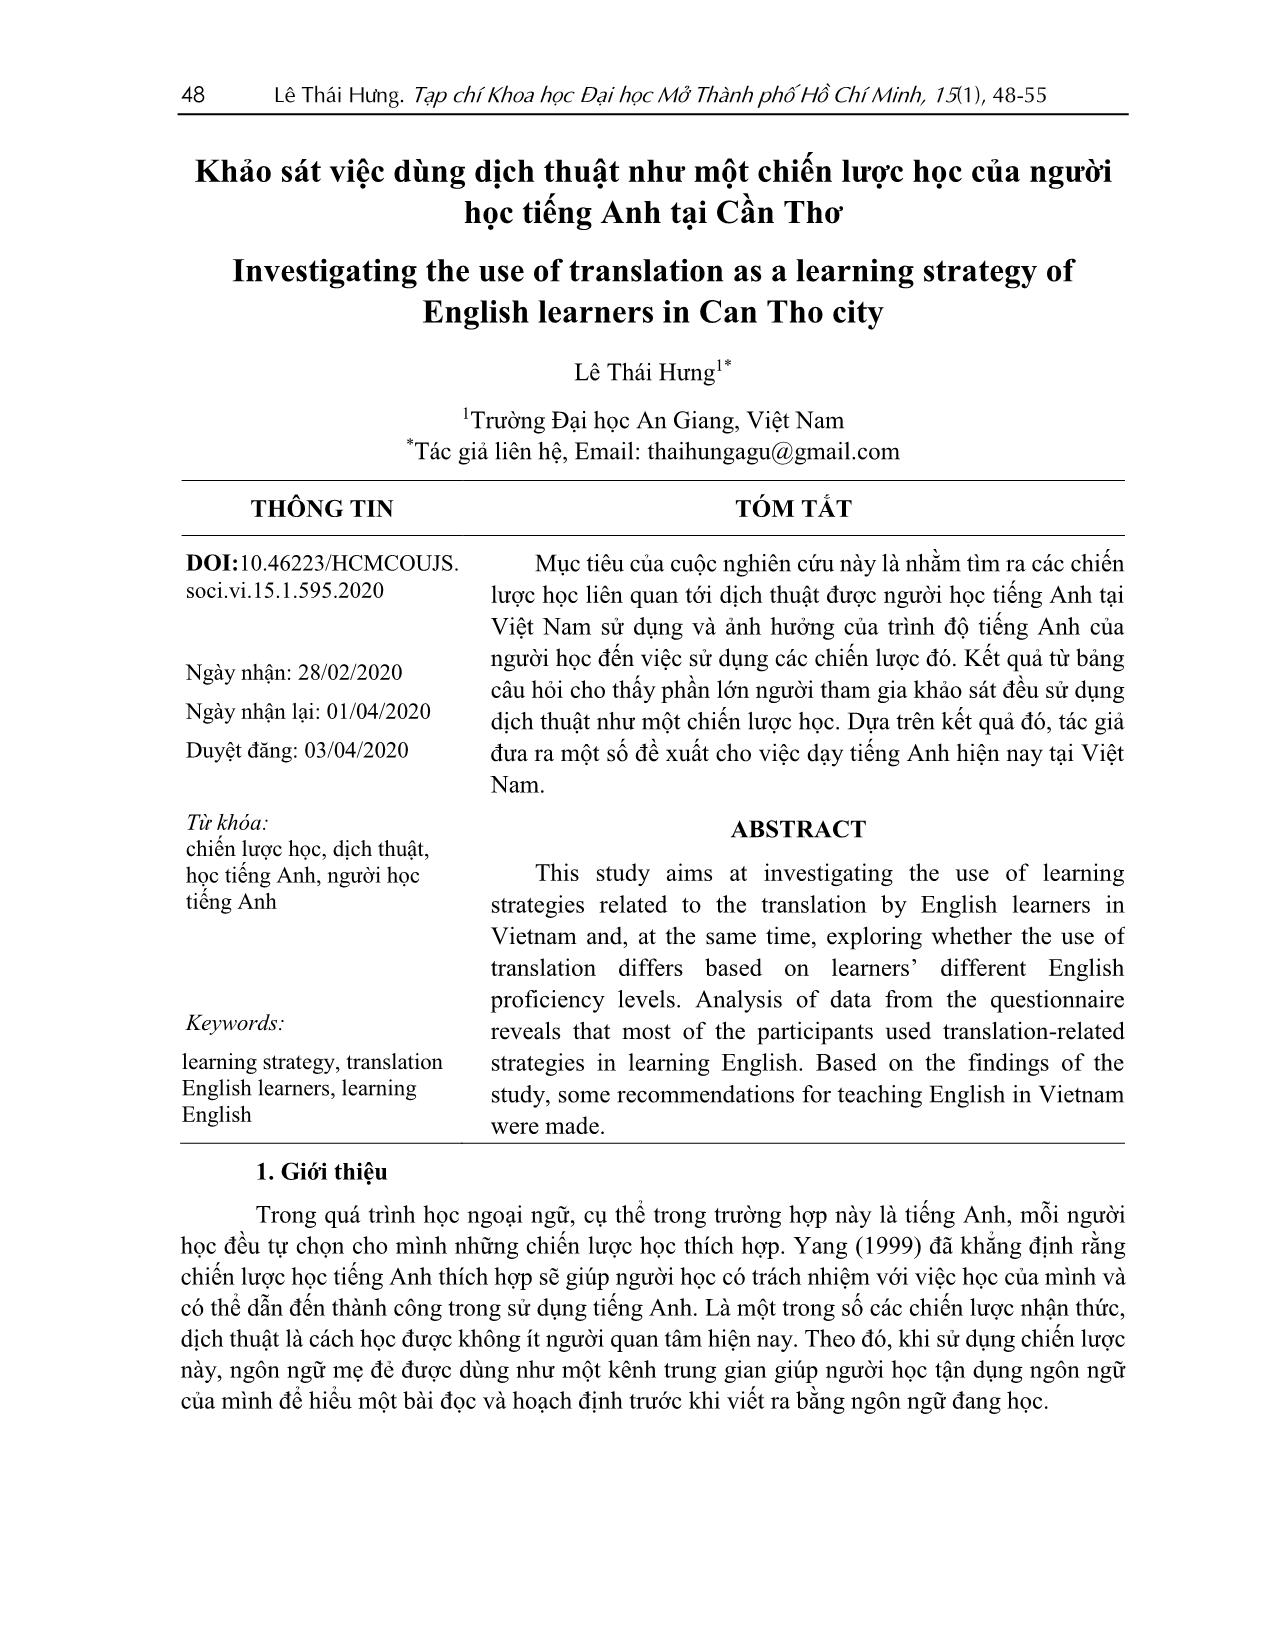 Khảo sát việc dùng dịch thuật như một chiến lược học của người học tiếng Anh tại Cần Thơ trang 1